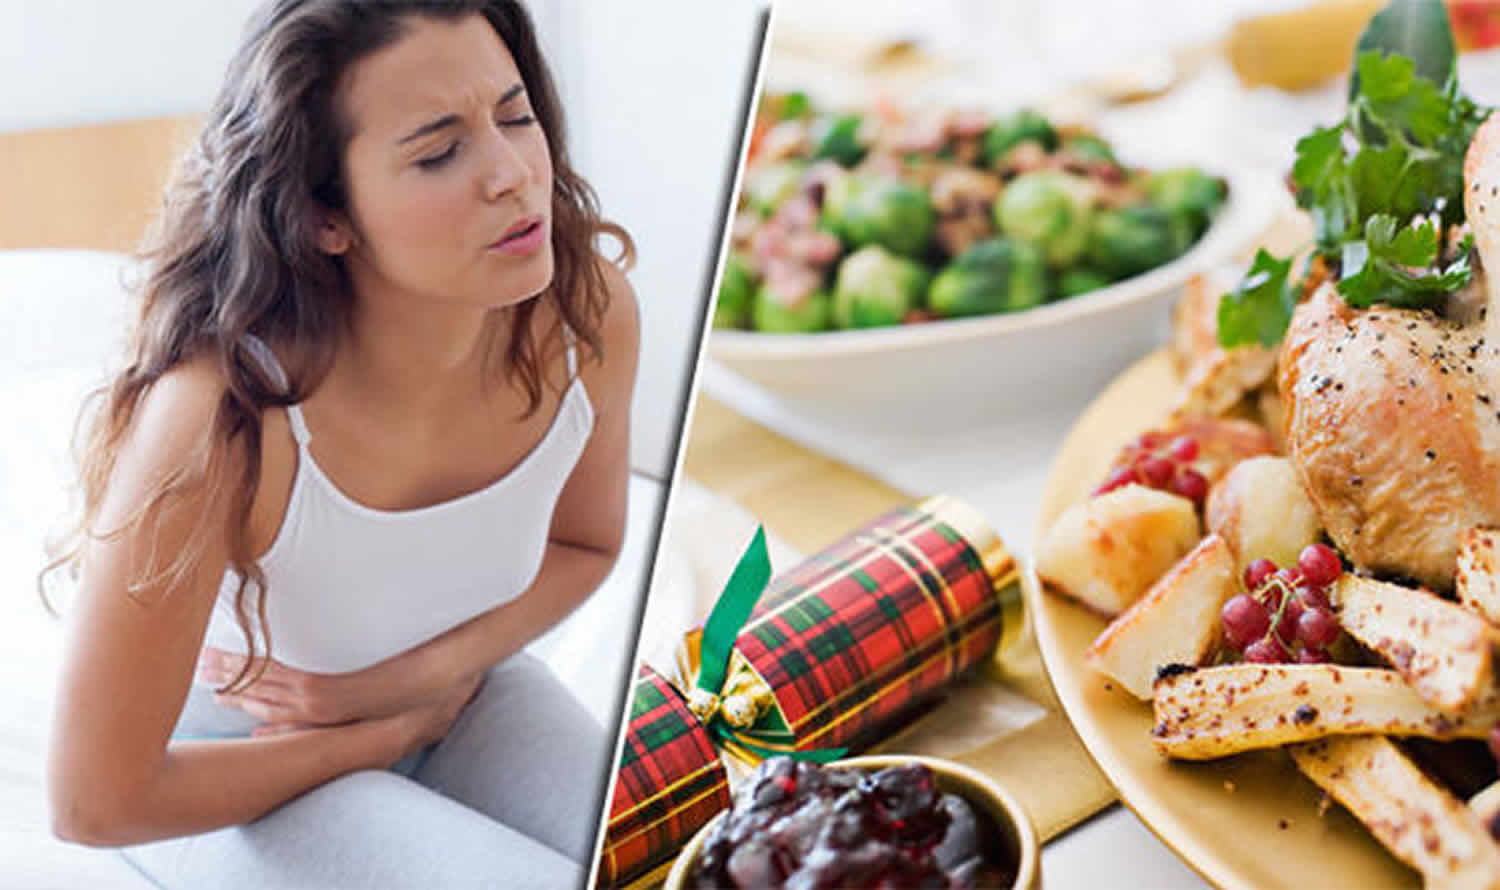 أعراض التسمم الغذائي وأشهر الأسباب التي تؤدي لتسمم الغذاء وعلاجها تعرف عليها